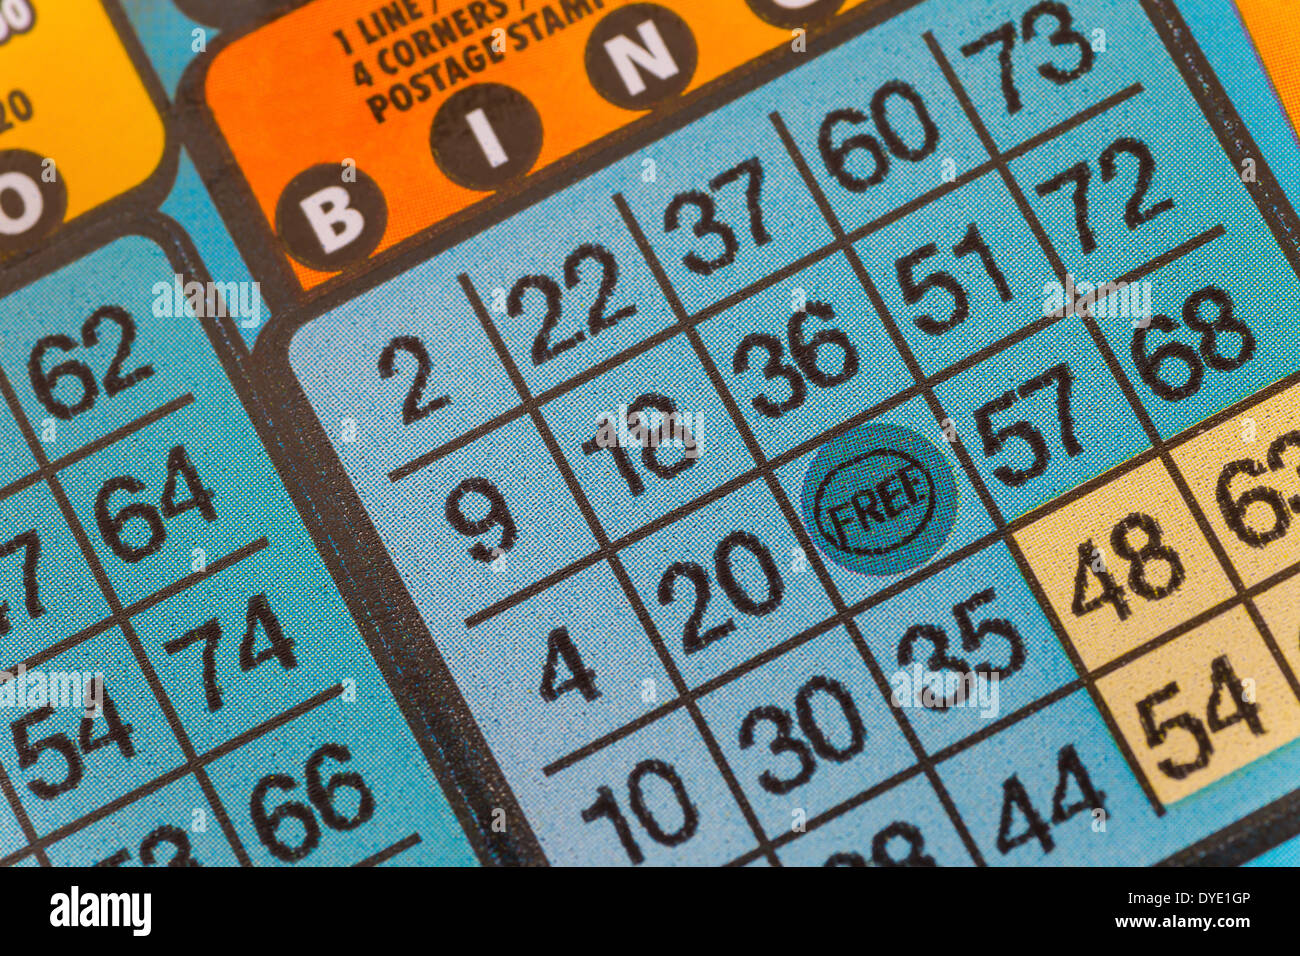 Dettaglio di un bingo lotteria gratta e vinci. Foto Stock